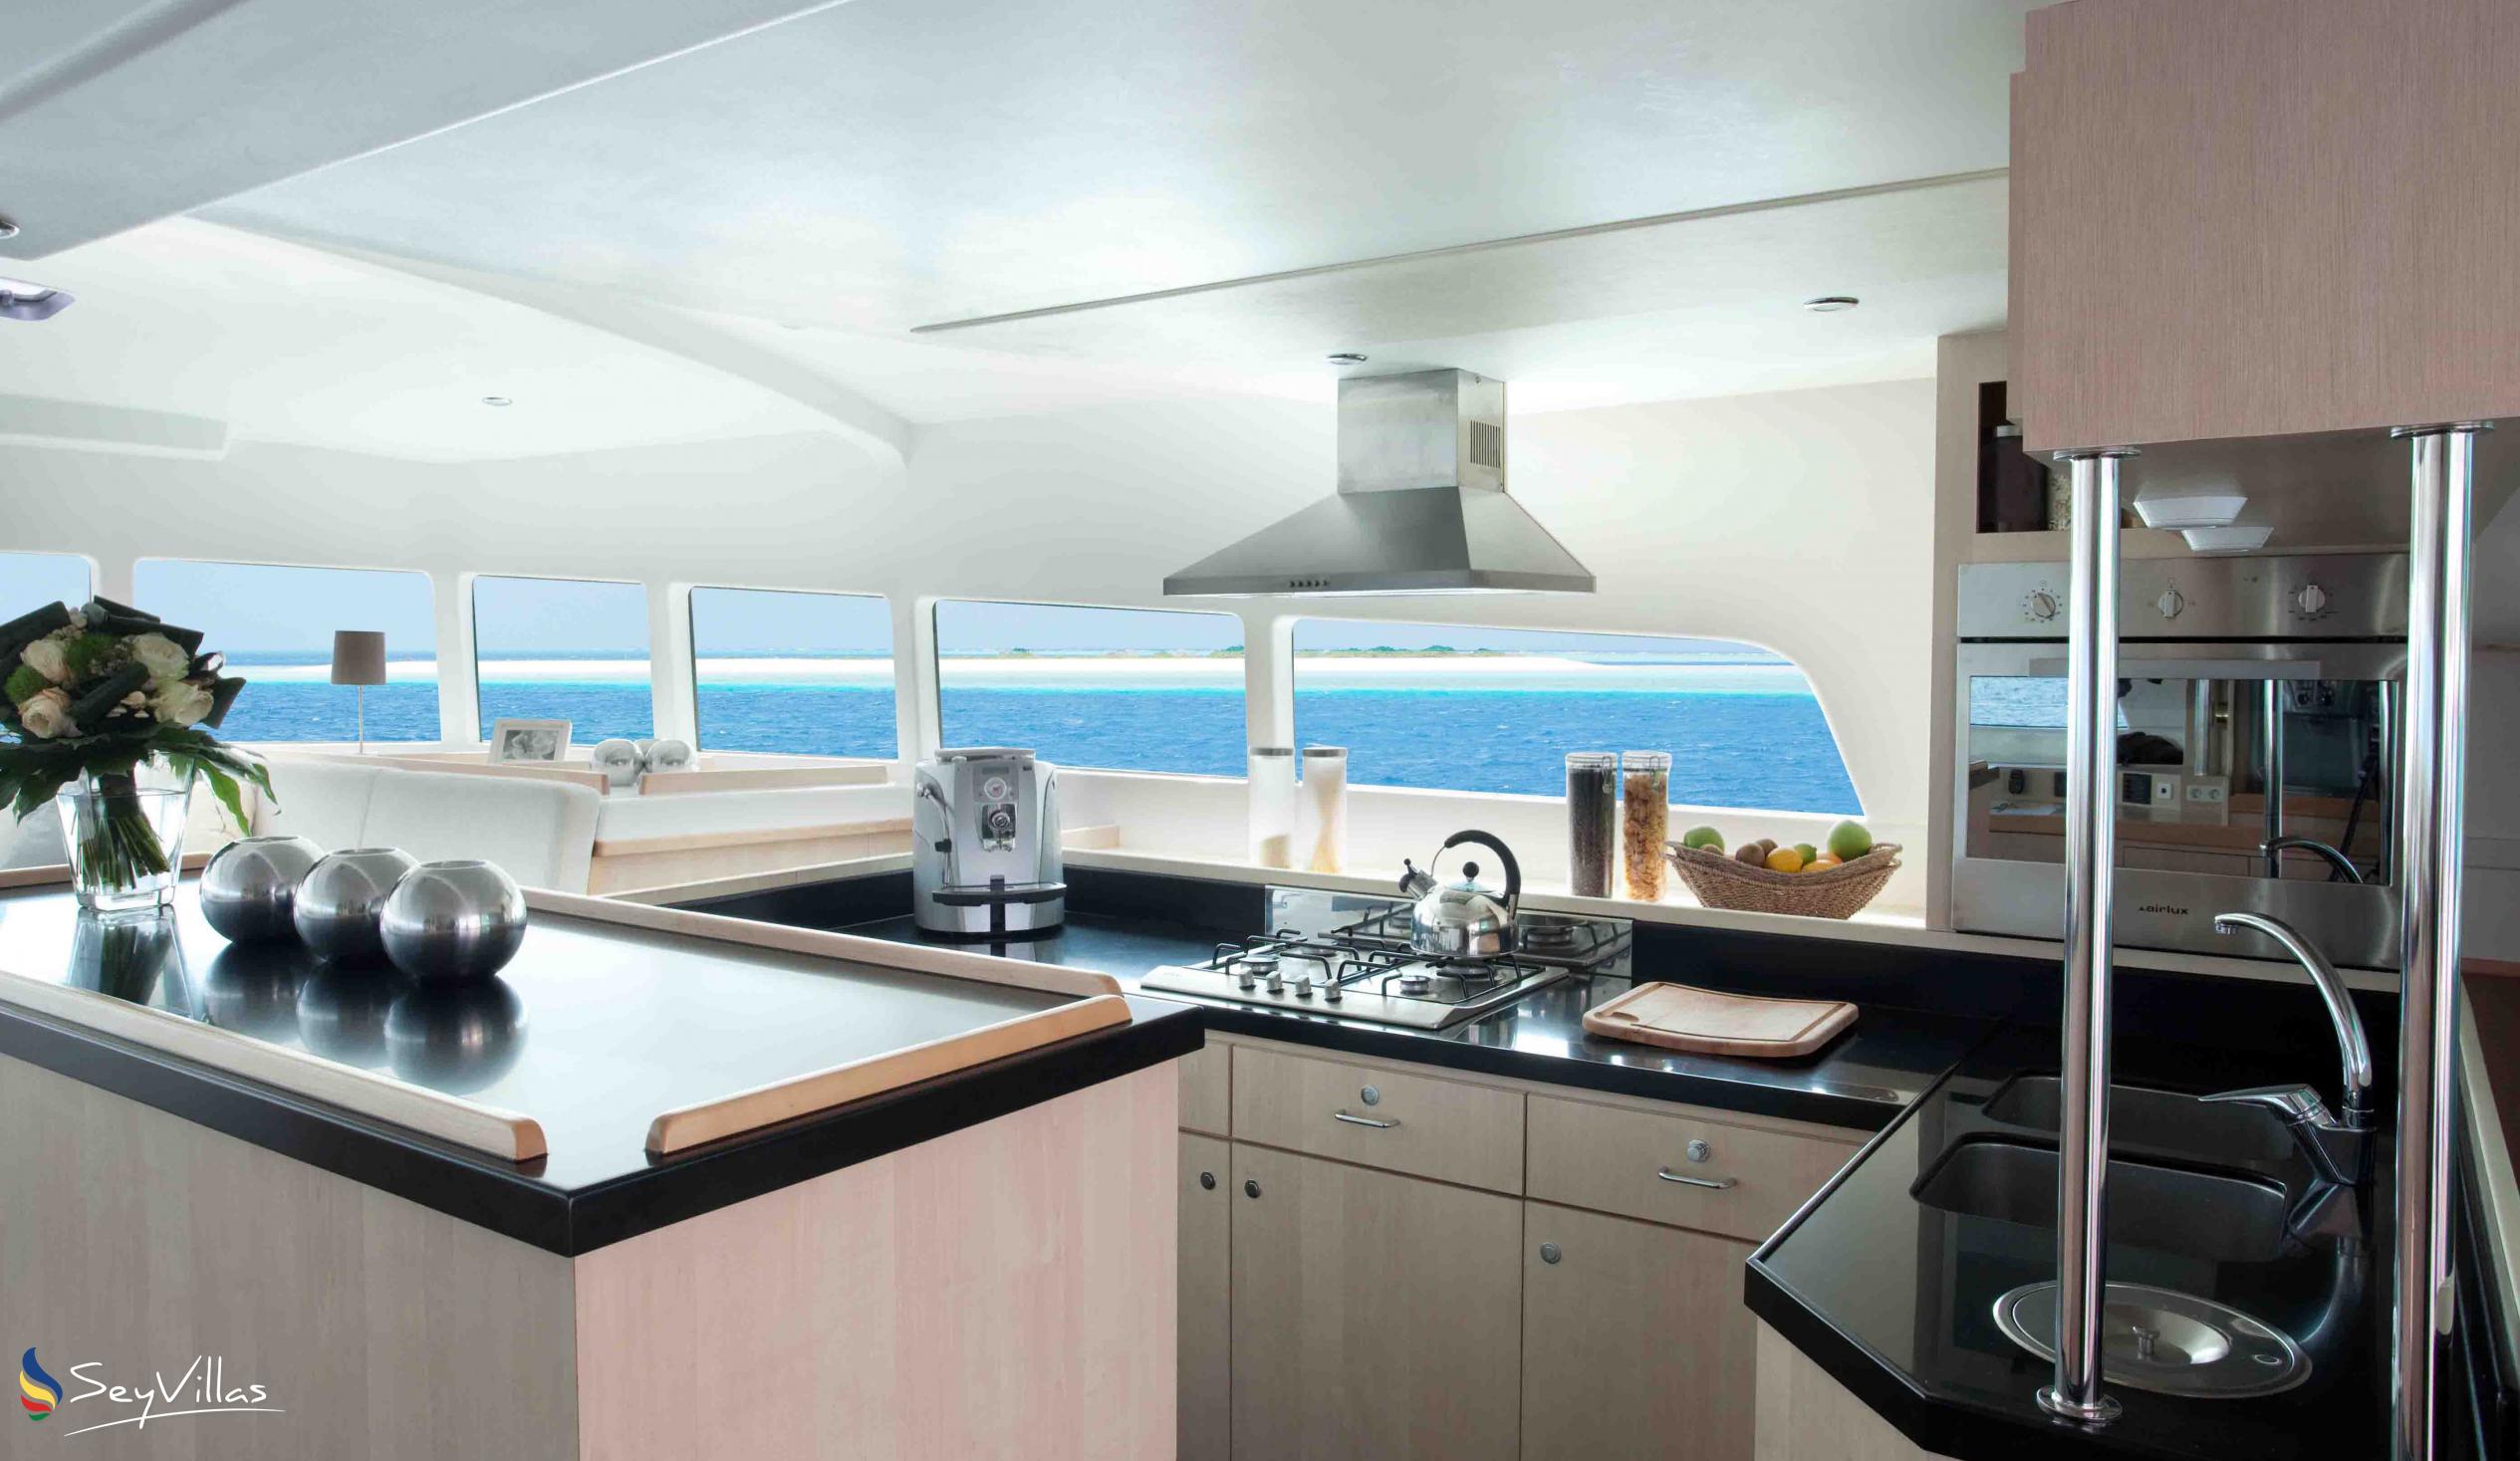 Foto 10: Dream Yacht Praslin Dream - Innenbereich - Seychellen (Seychellen)